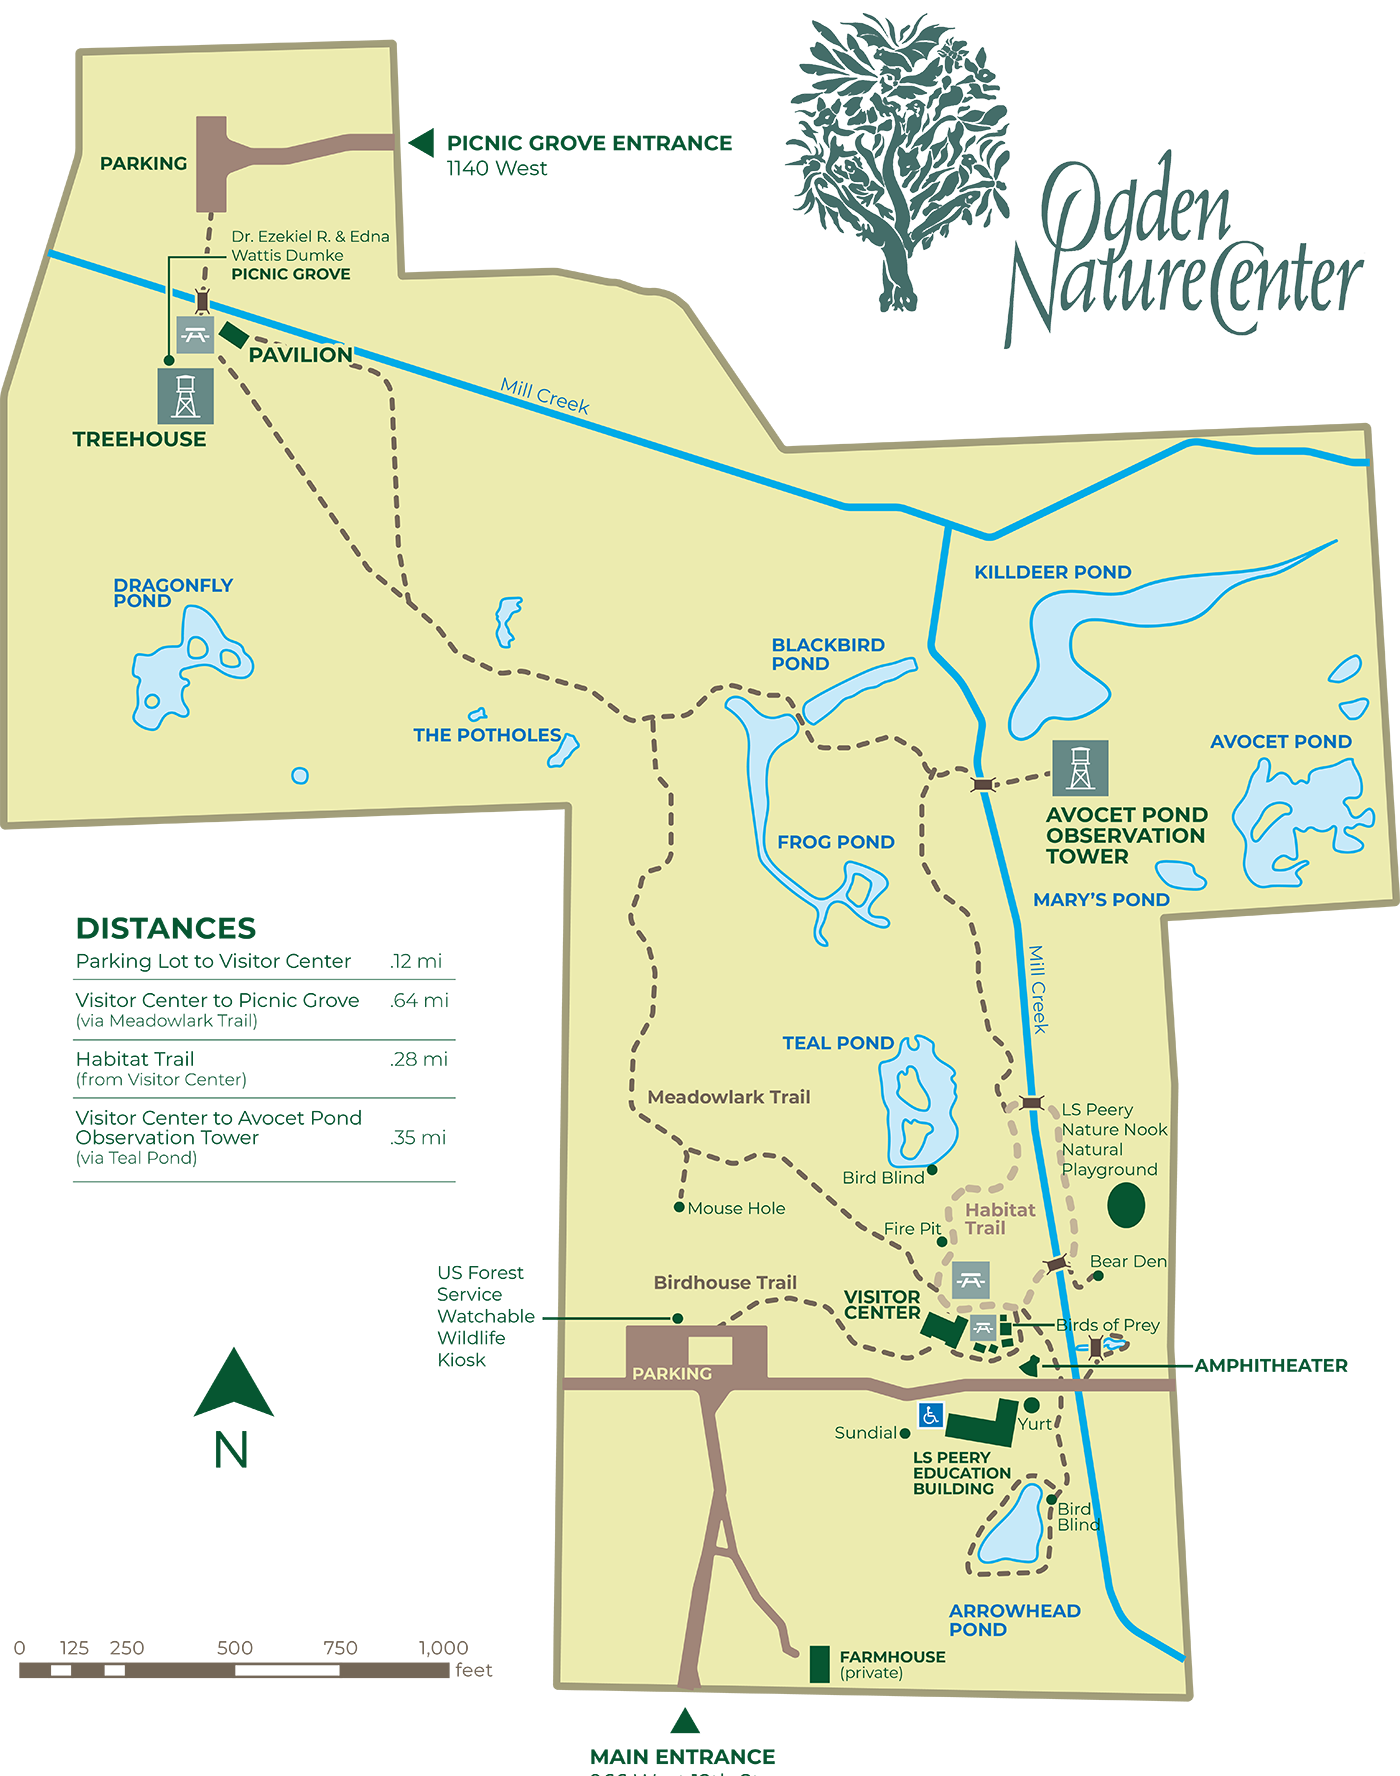 Ogden Nature Center Summer Adventure Camps